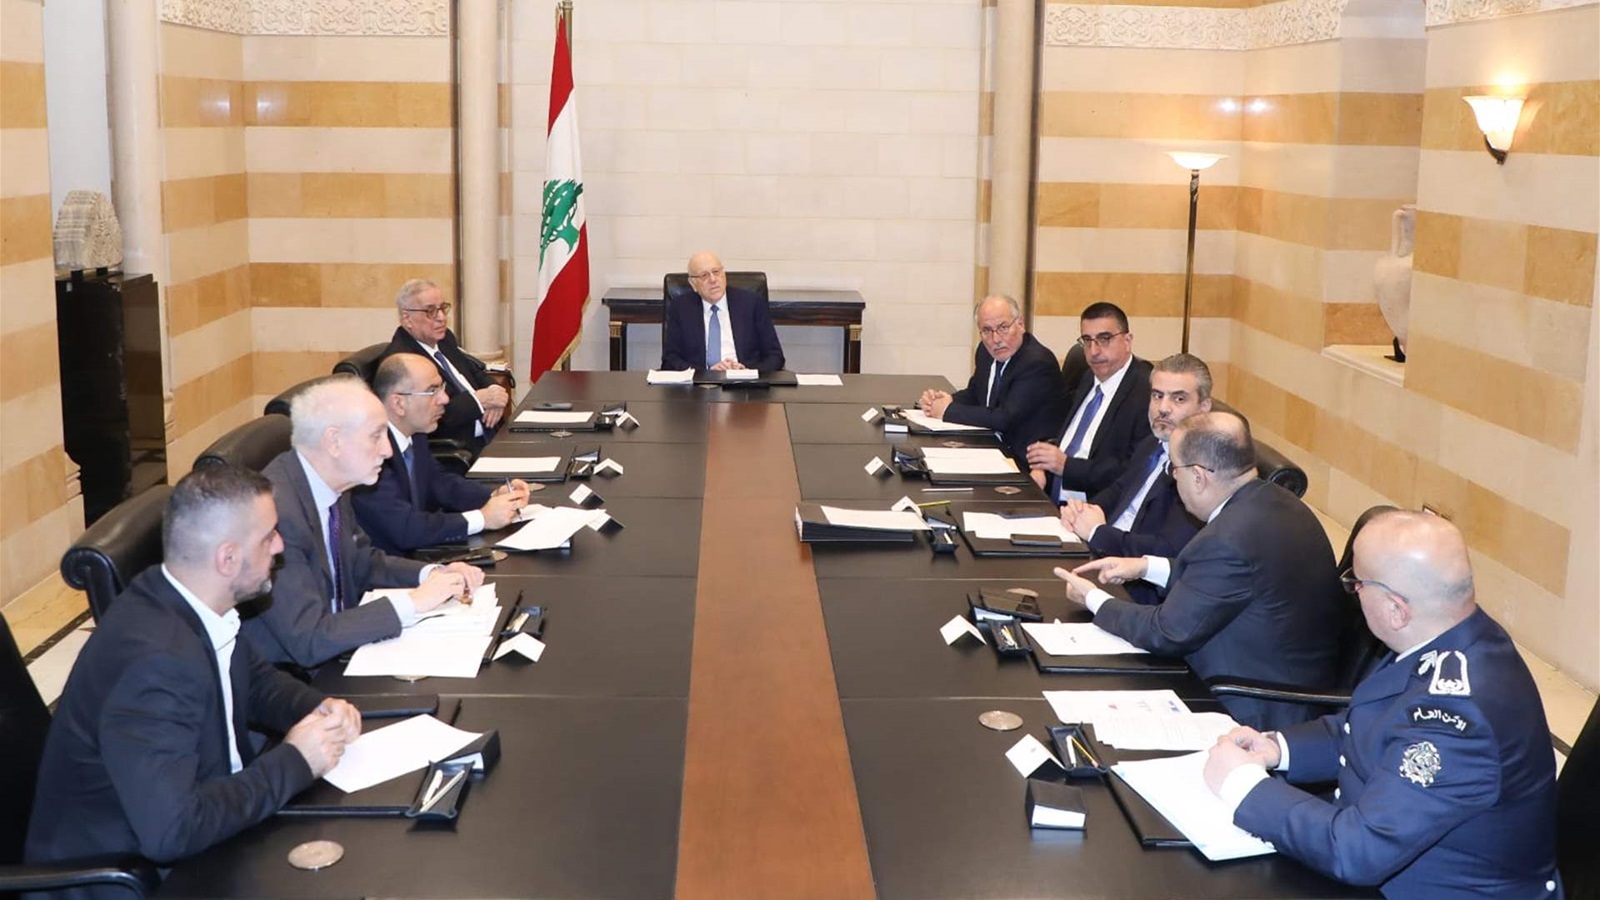 الخطة الحكوميّة لتنظيم الوجود السّوريّ في لبنان: رعب "التوطين"